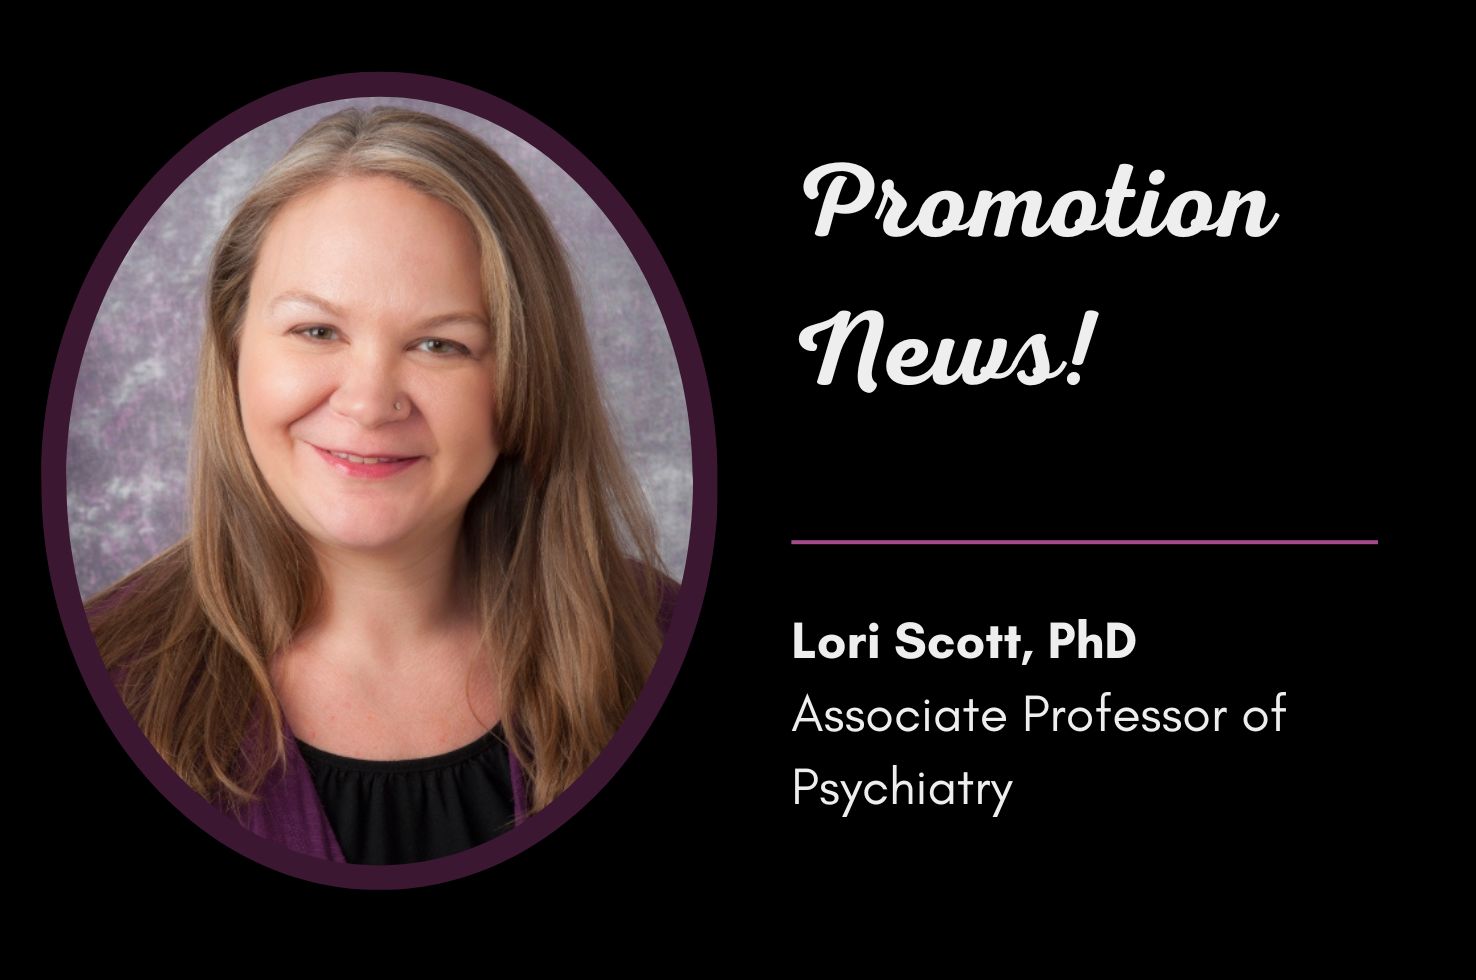 Dr. Lori Scott